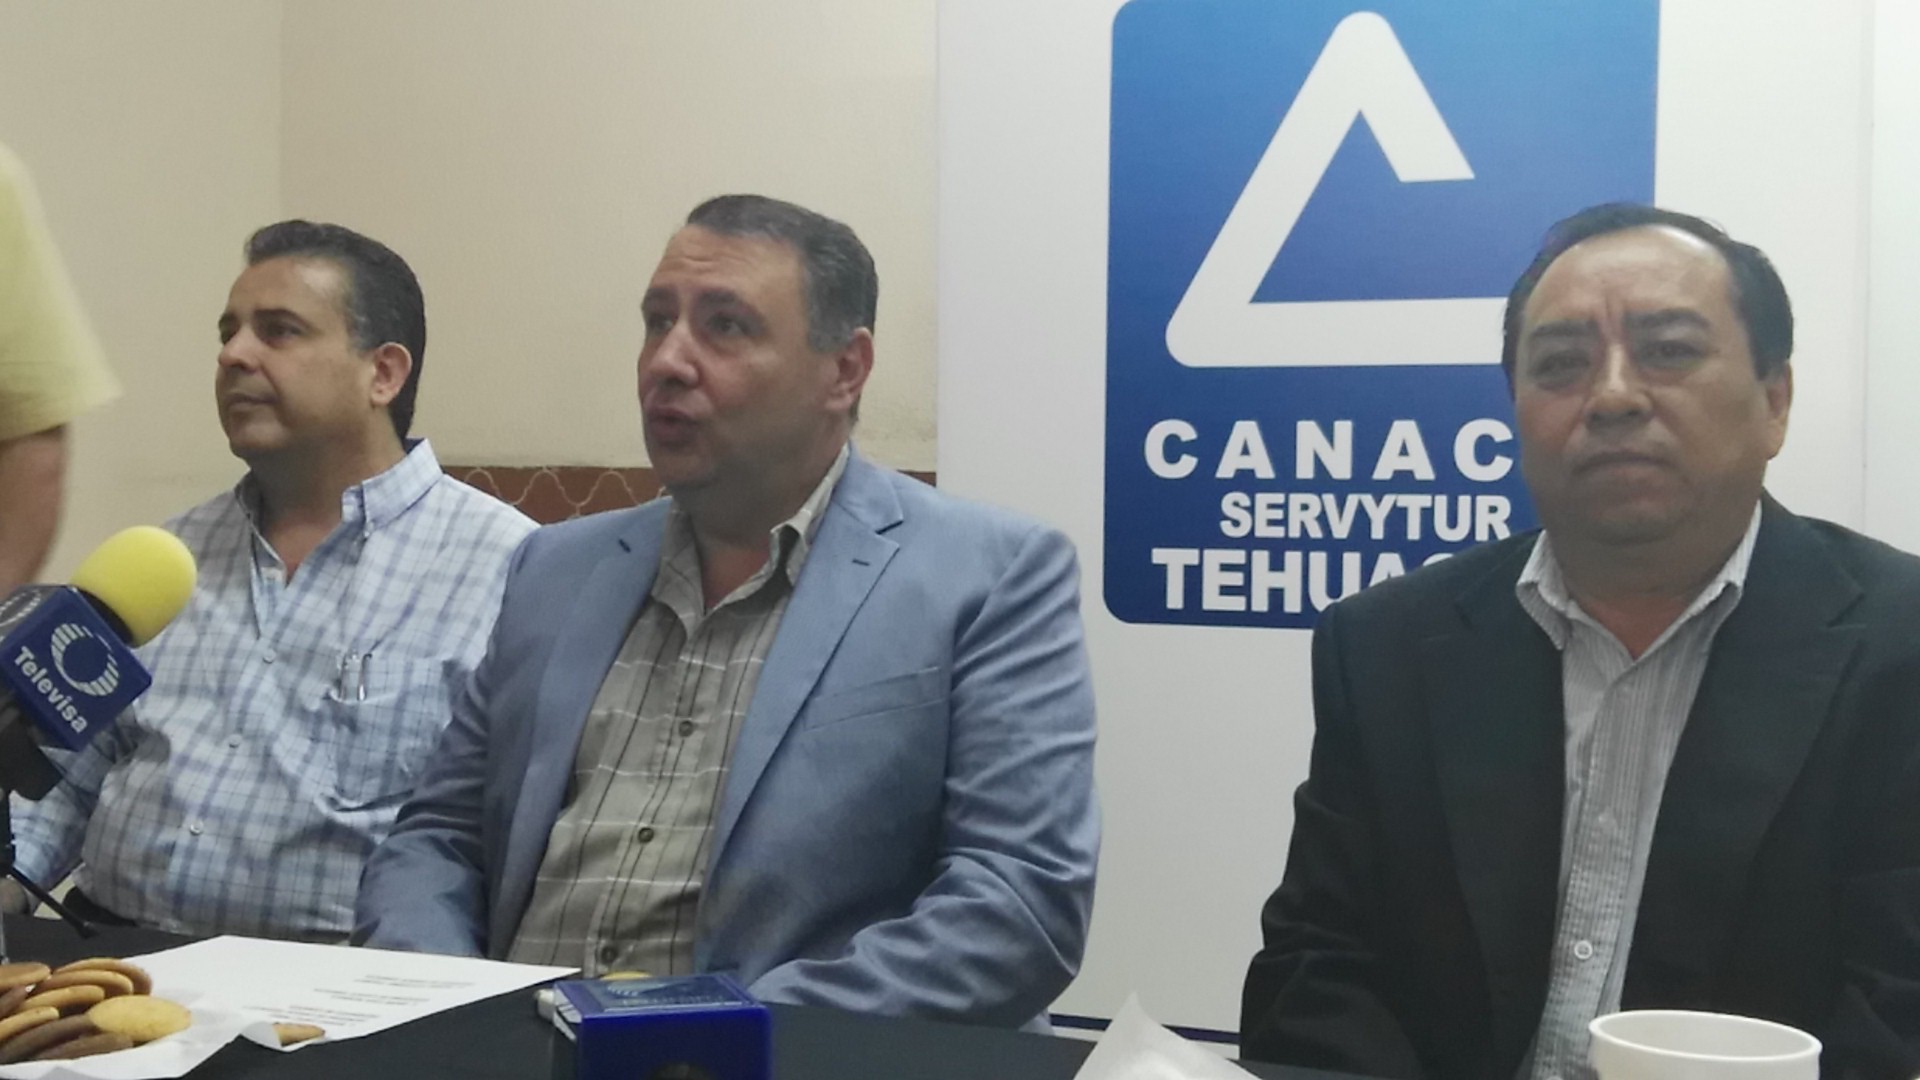 Comercio vive con miedo ante la inseguridad en Tehuacán: Canaco